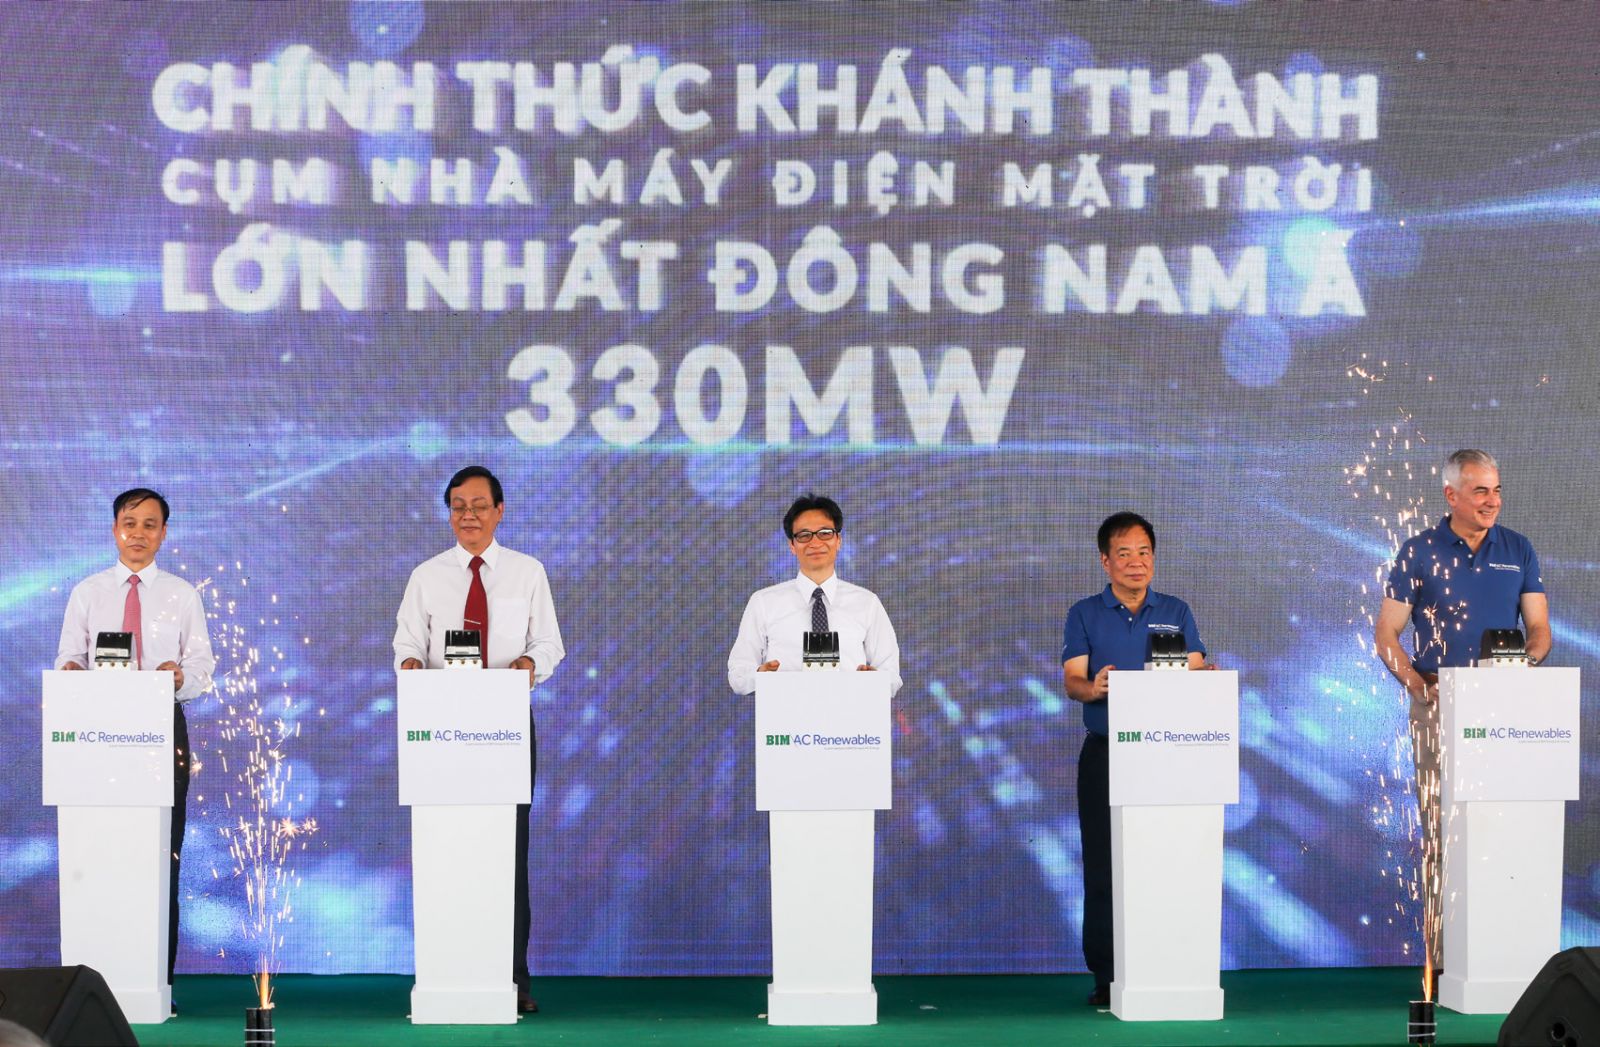  BIM Group khánh thành và hòa lưới điện quốc gia cụm 3 nhà máy điện mặt trời quy mô 330MW,